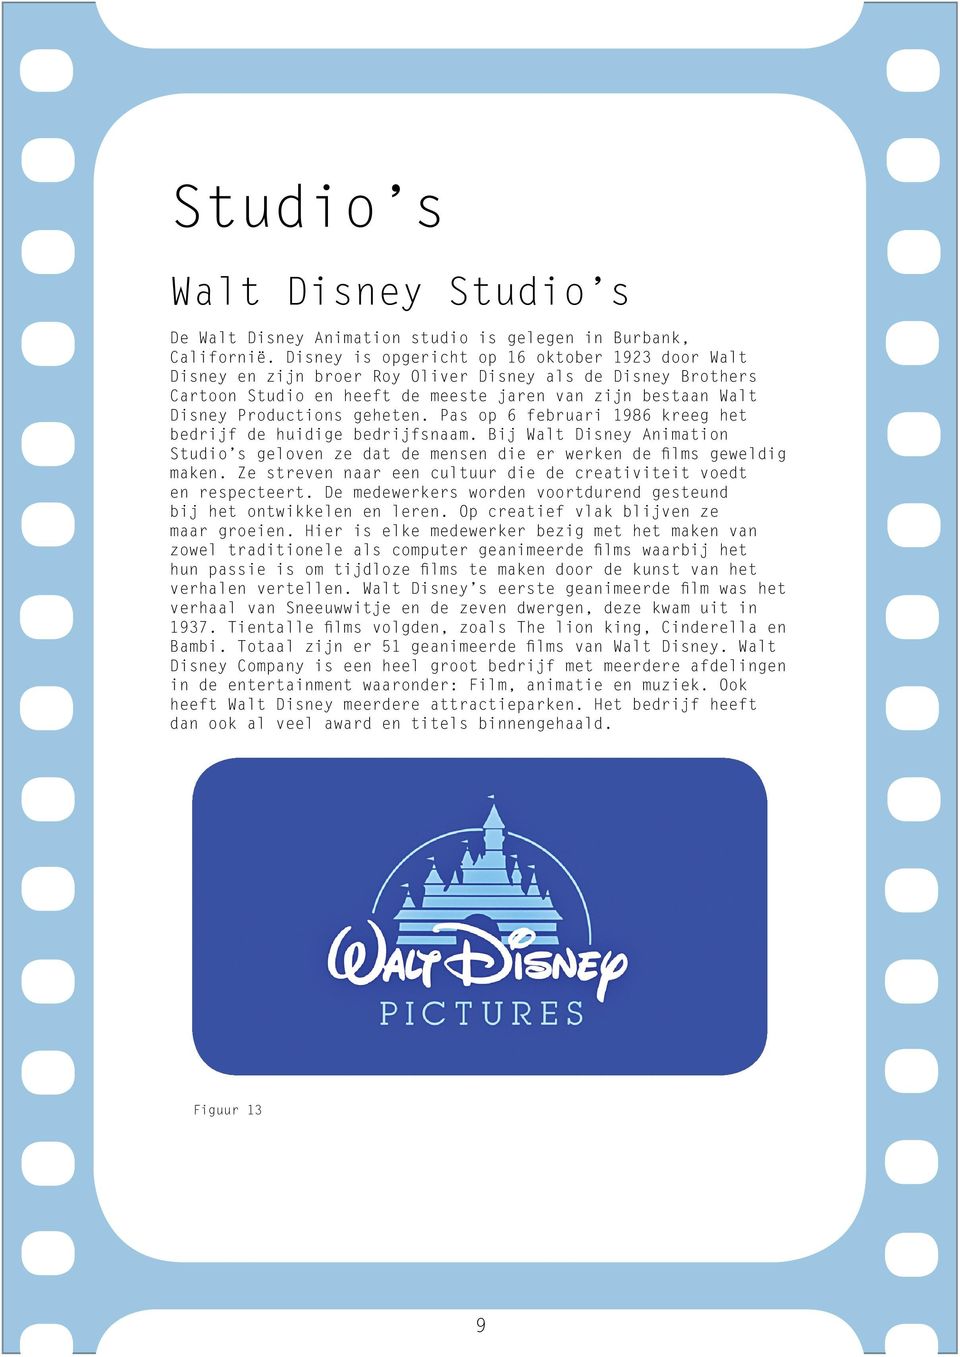 Pas op 6 februari 1986 kreeg het bedrijf de huidige bedrijfsnaam. Bij Walt Disney Animation Studio s geloven ze dat de mensen die er werken de films geweldig maken.